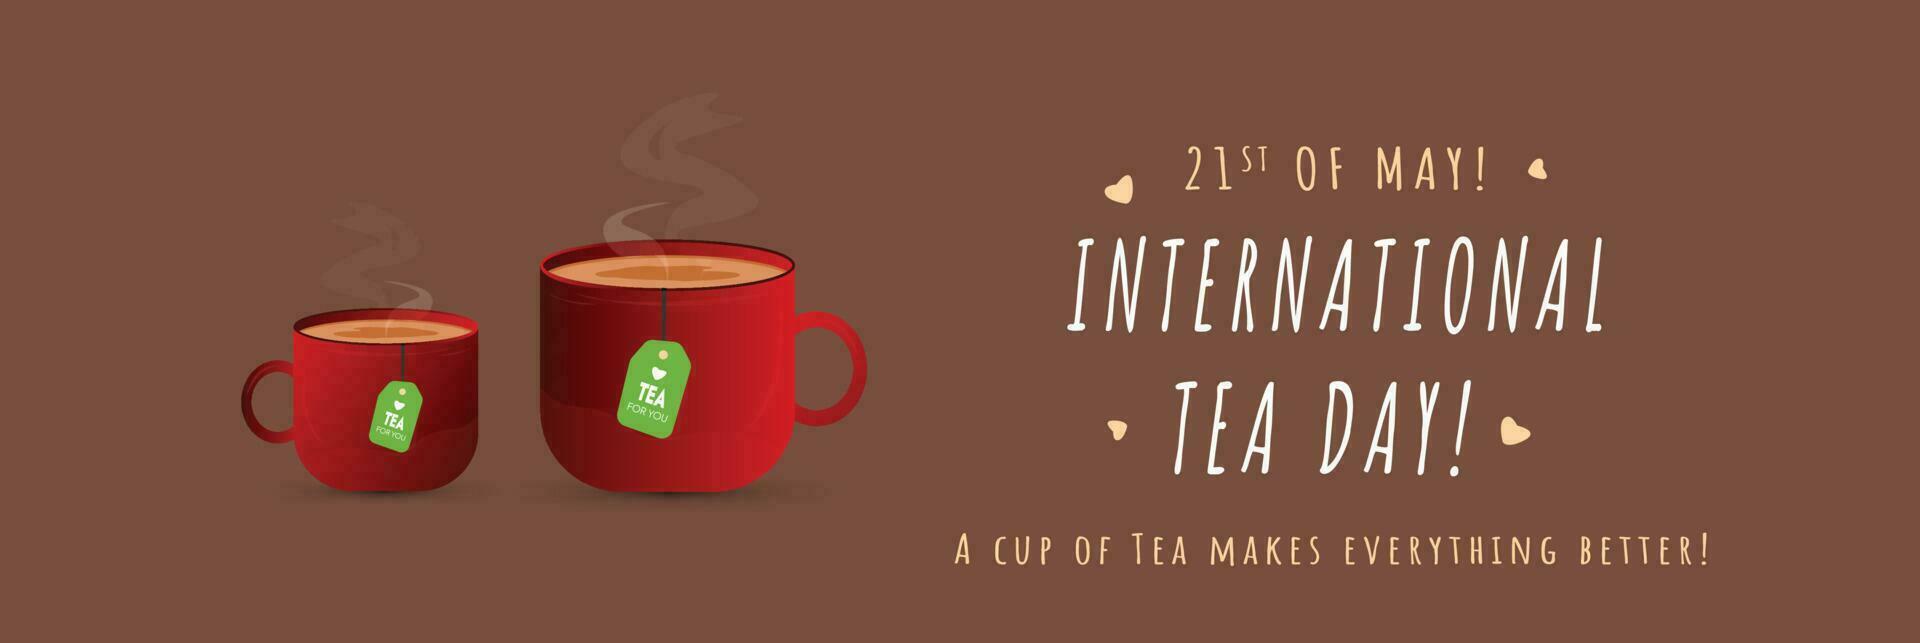 Internationale thee dag. 21e mei gelukkig thee dag viering banier met twee cups van thee en theezakjes. restaurant bewustzijn post voor koffie liefhebbers. kop vol van heet thee. vector poster voor sociaal media